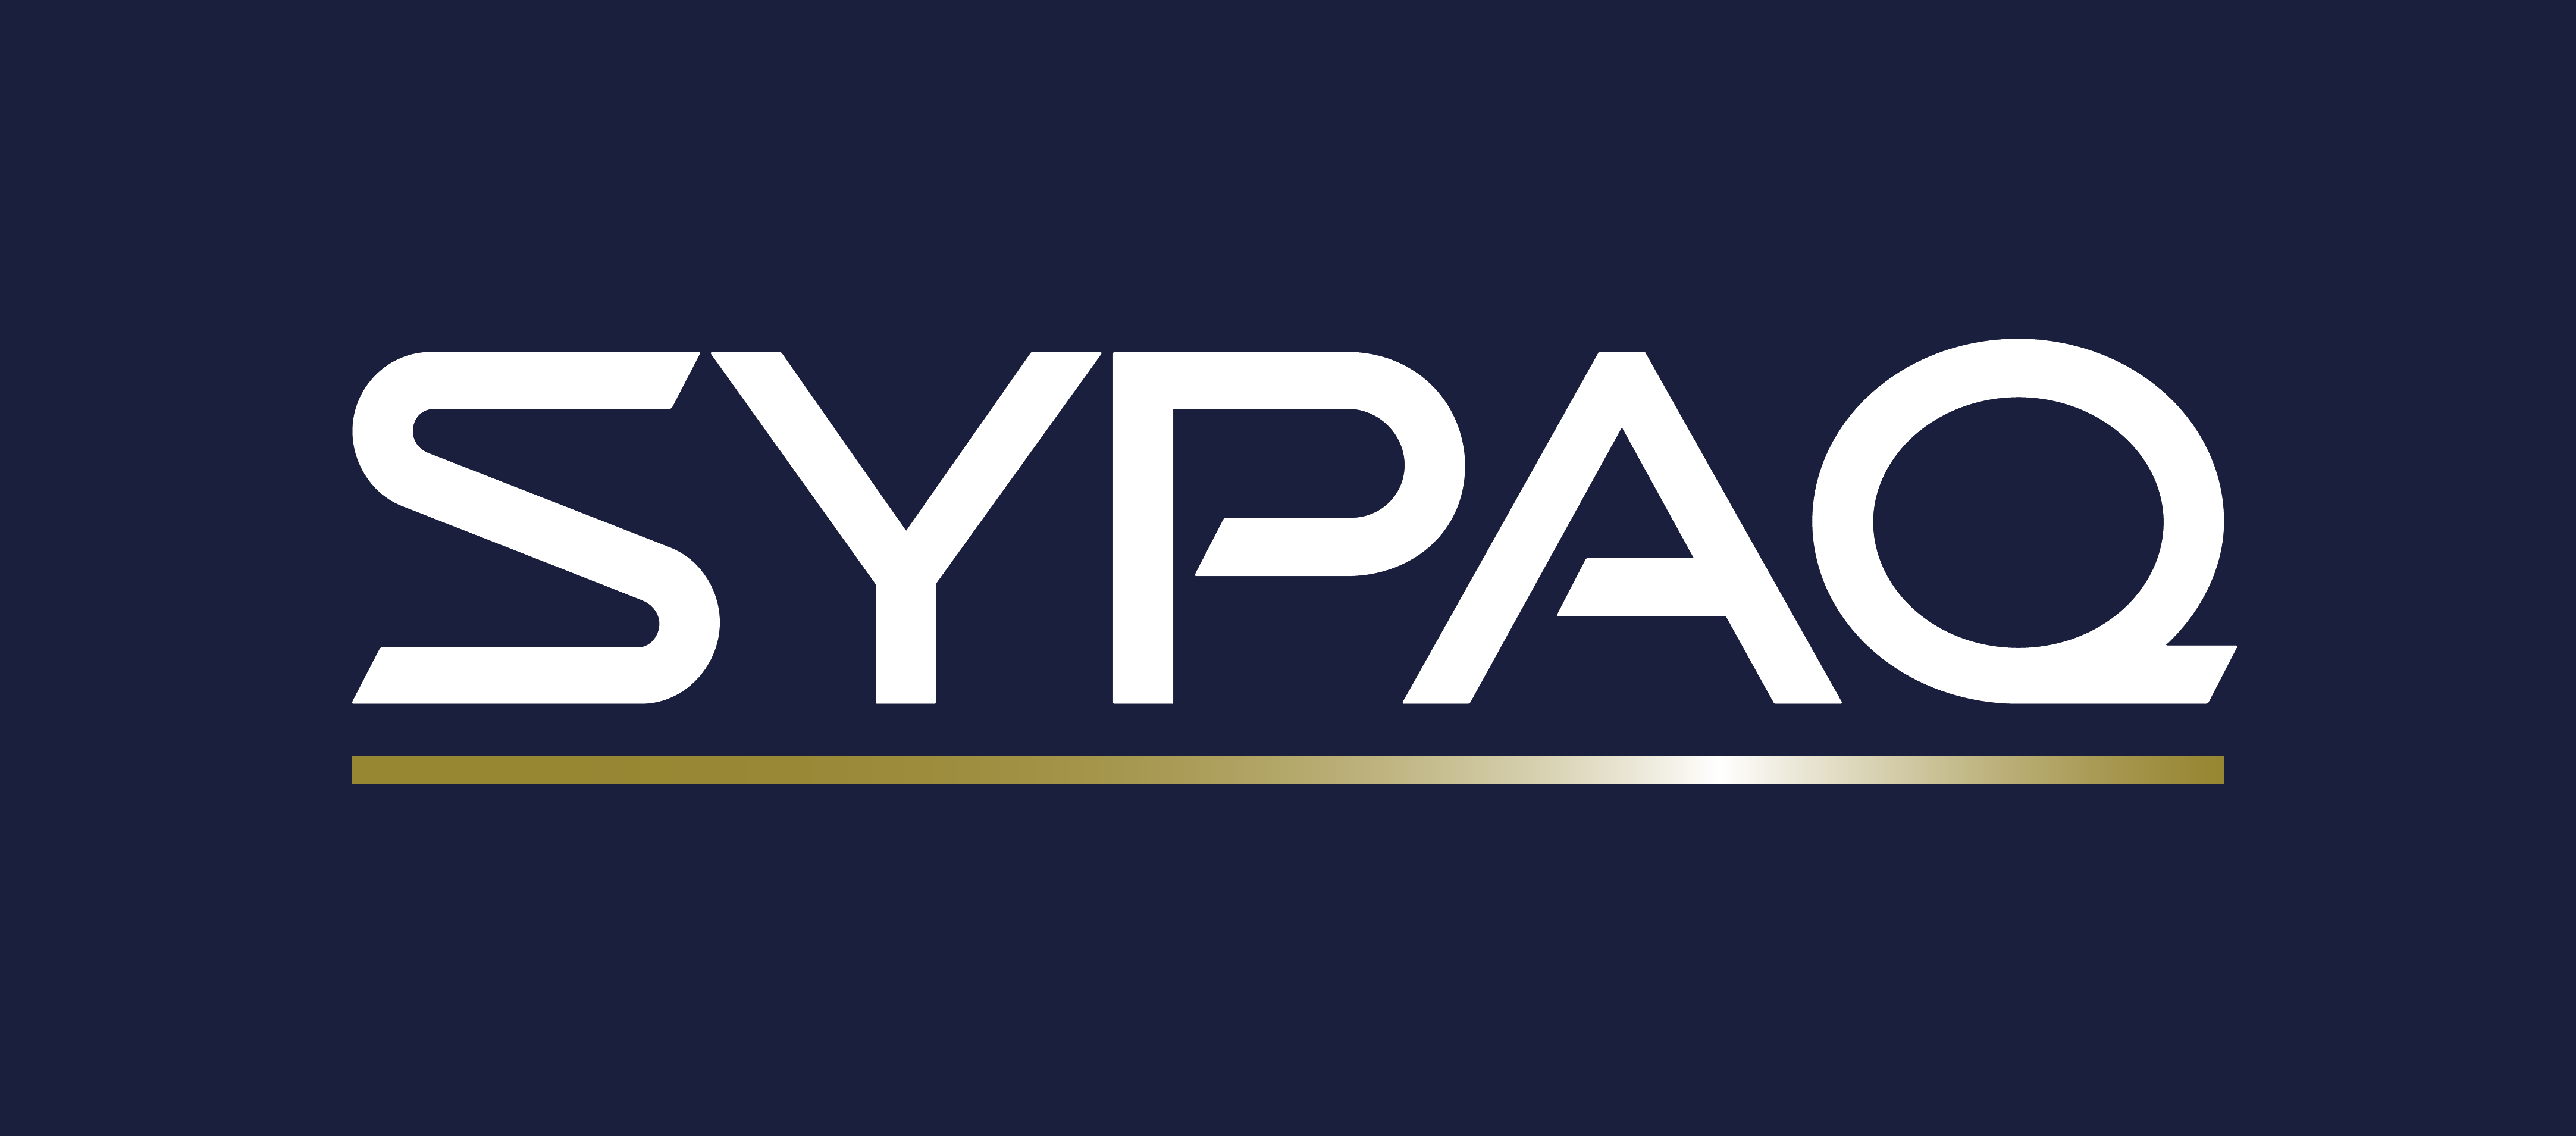 SYPAQ logo: white text on dark navy background